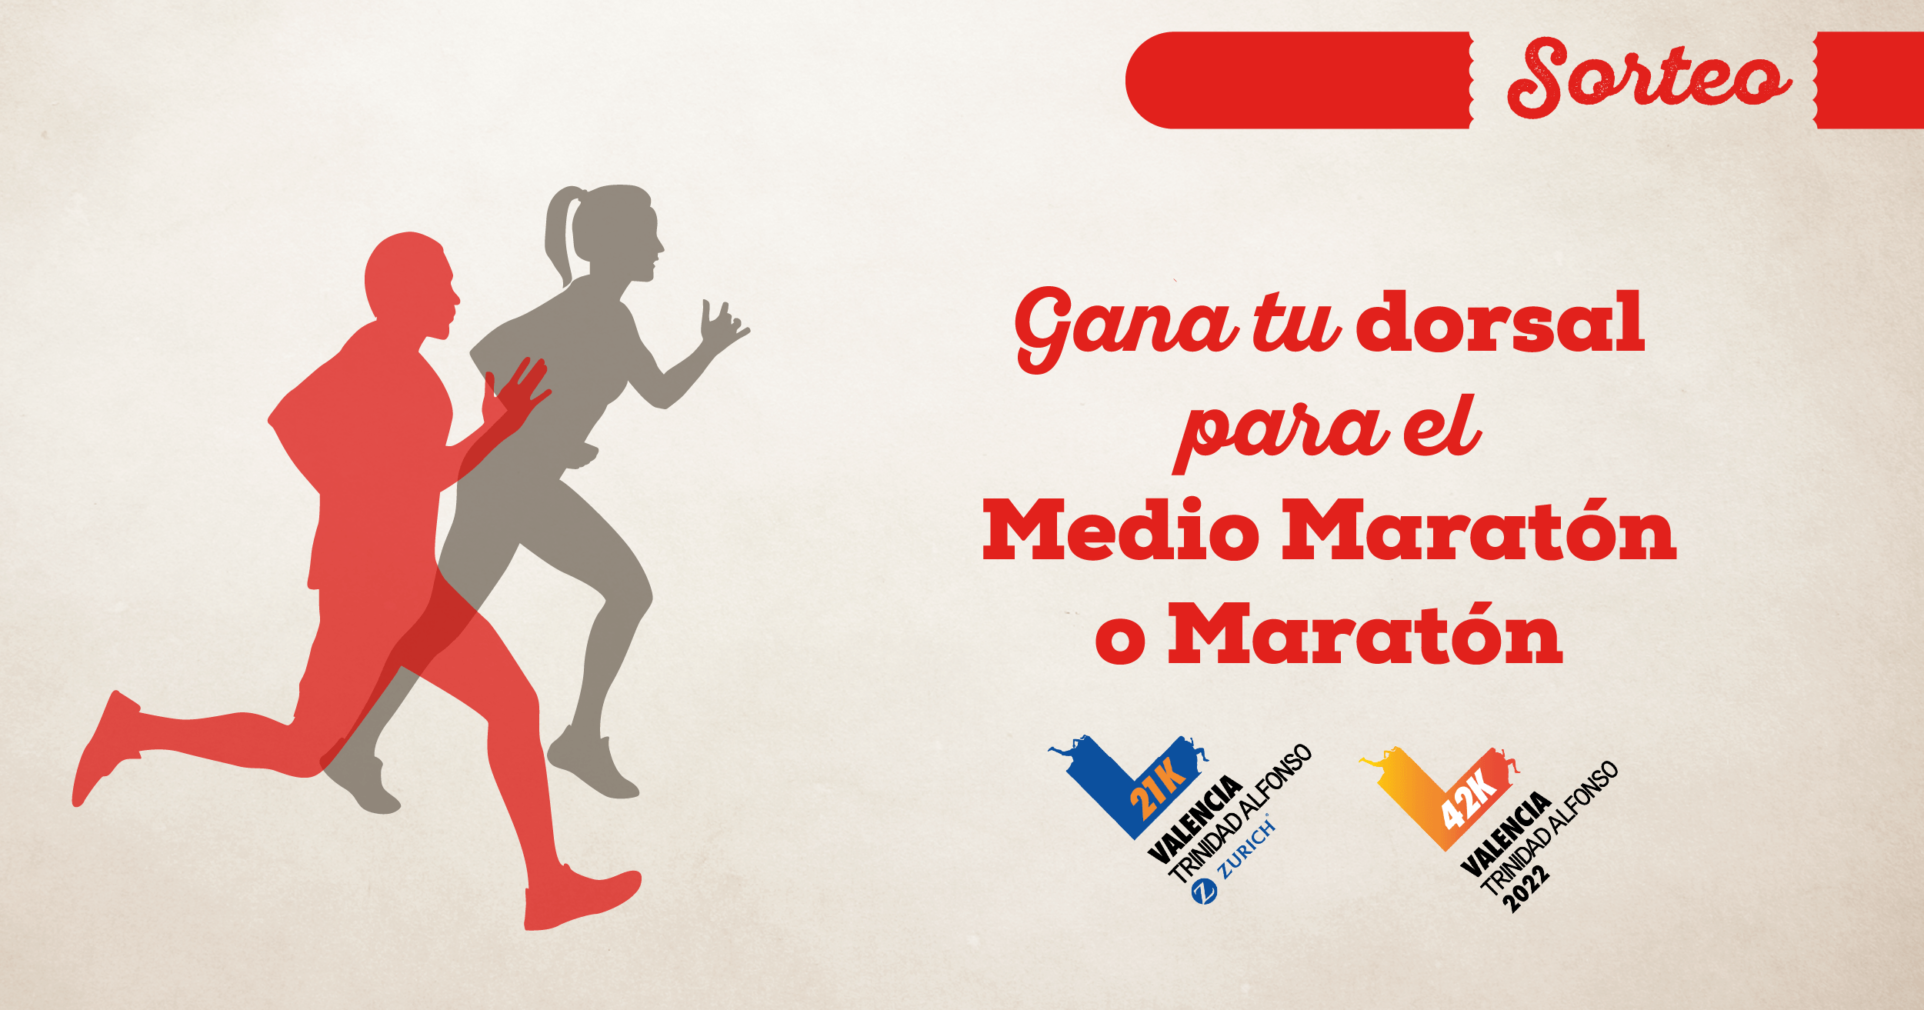 Maraton y medio maraton Valencia Trinidad Alfonso